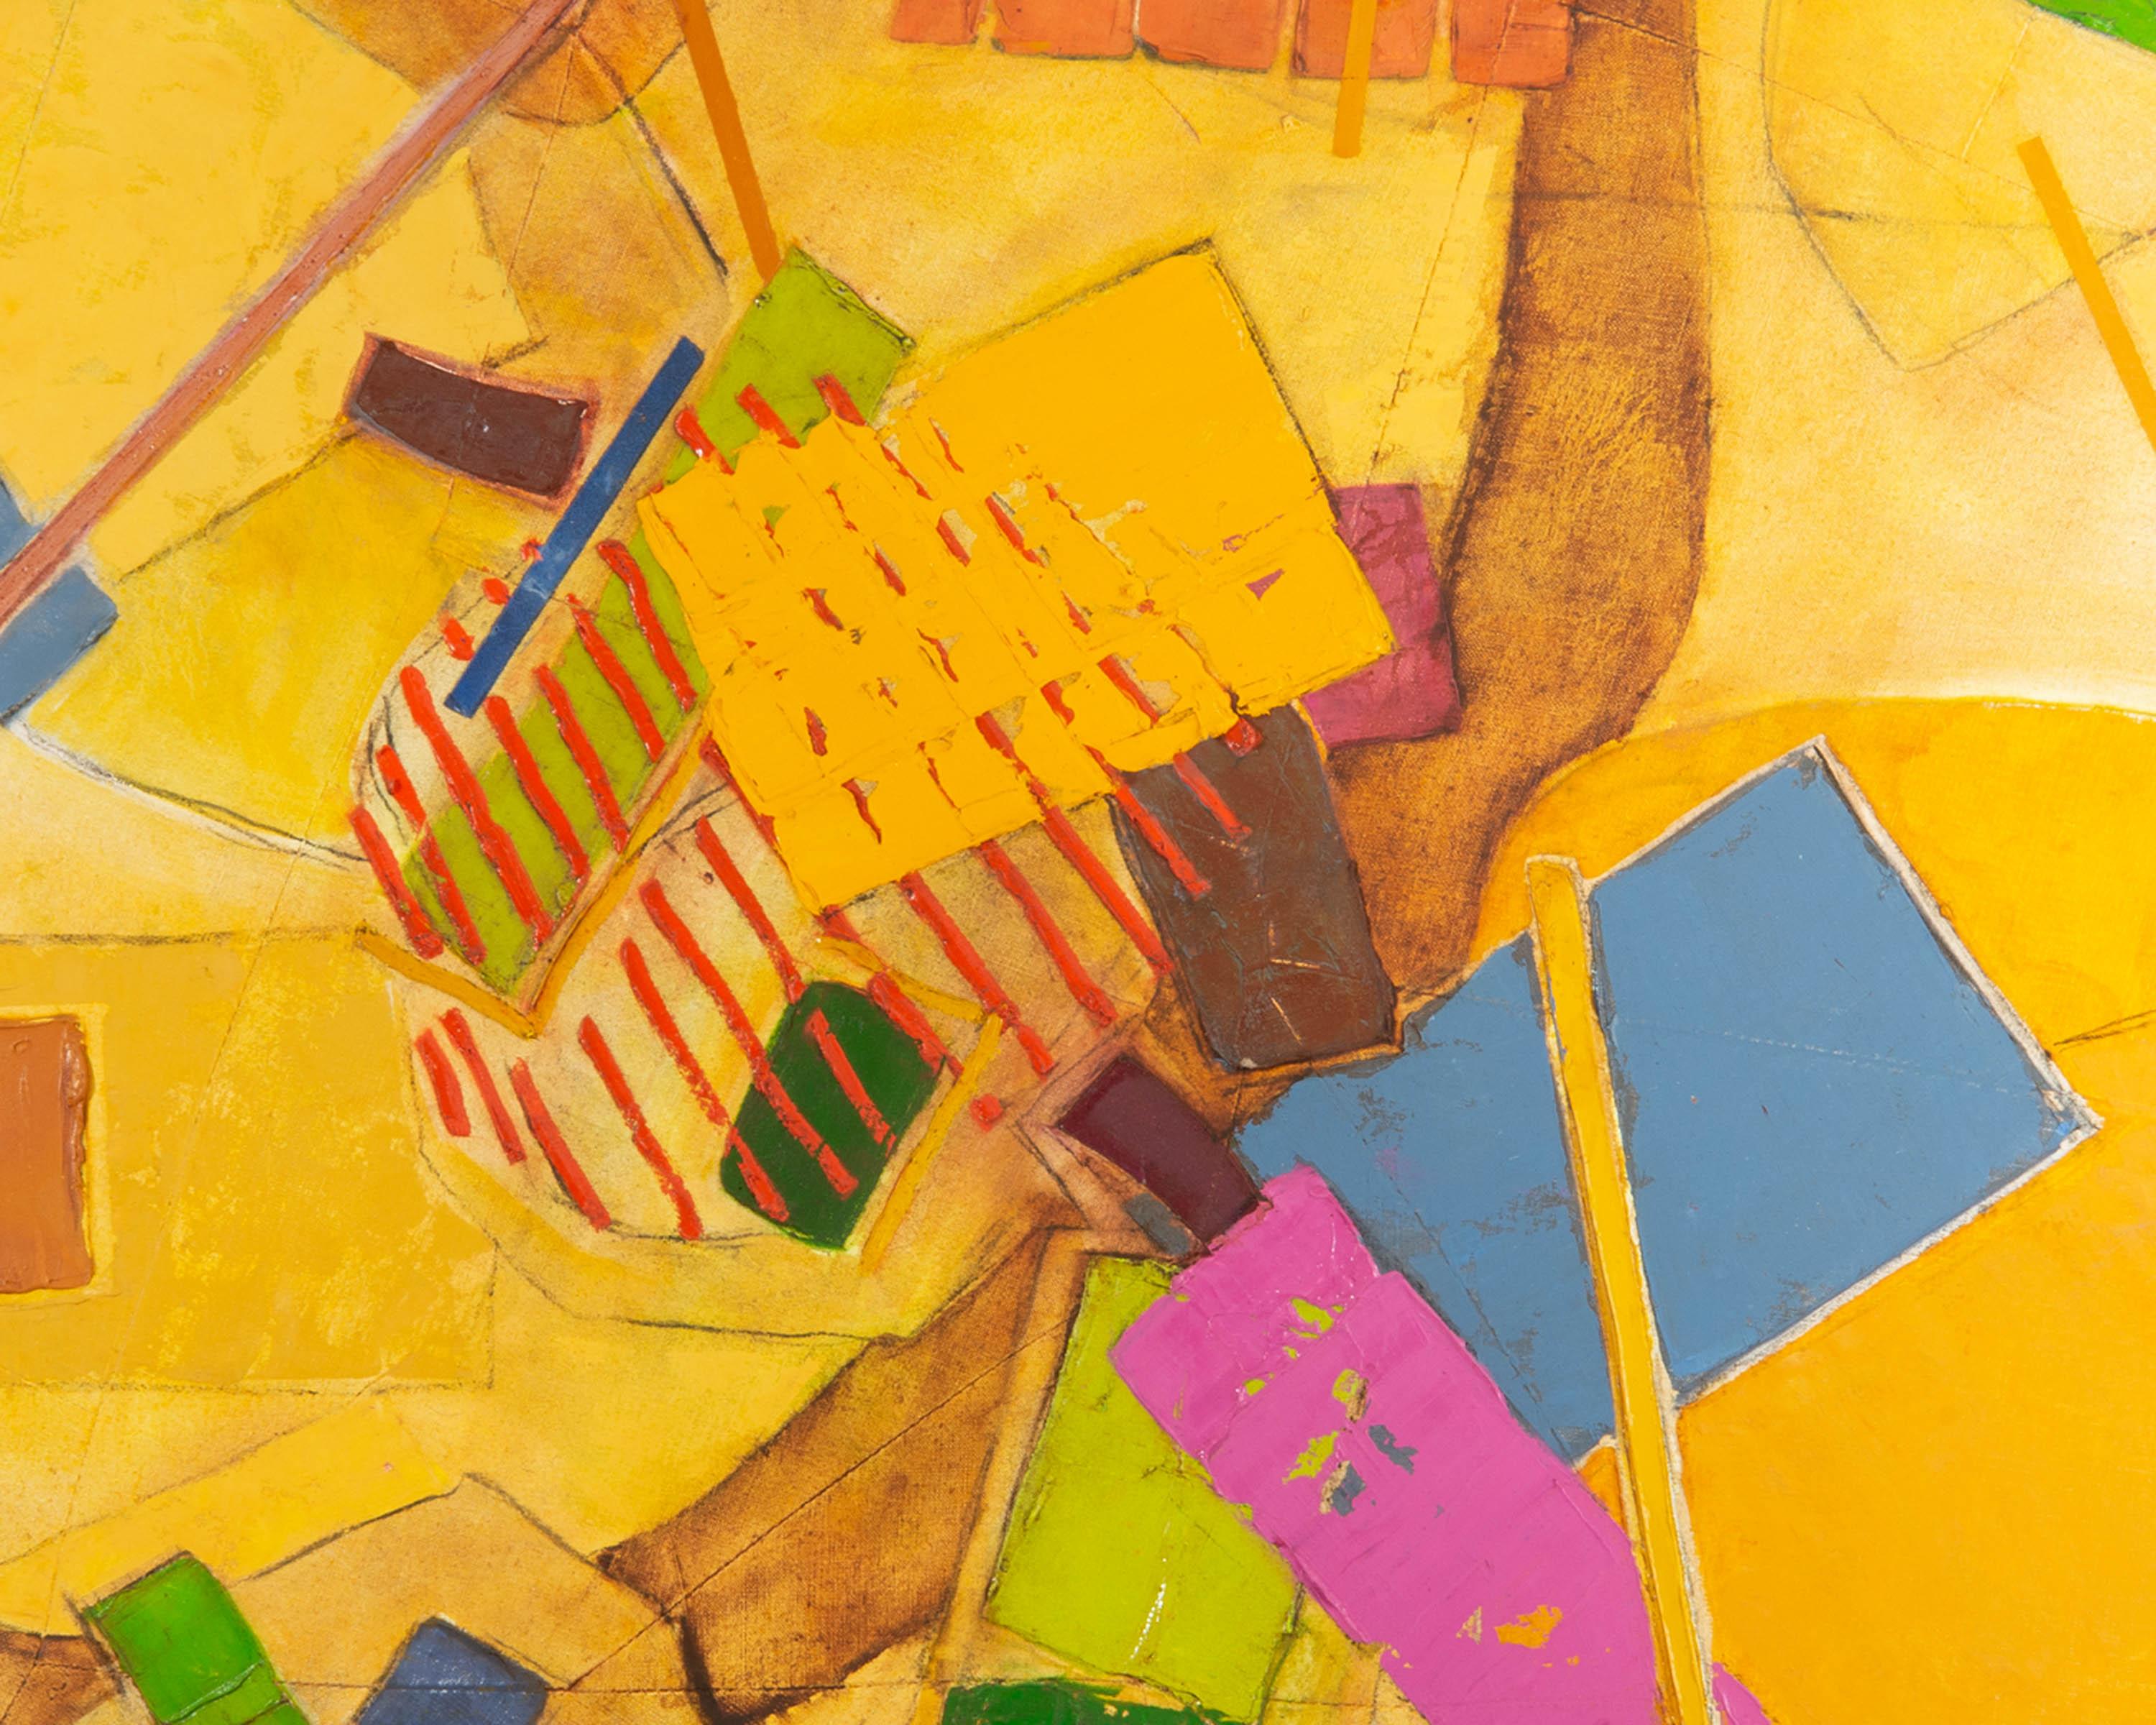 Huile abstraite sur toile à huit côtés intitulée Yellow-Pink de l'artiste canadien Walter Sorge (1931-2021). Des taches roses, vertes et bleues sont représentées parmi une variété de formes et de textures colorées en relief sur un fond jaune. La